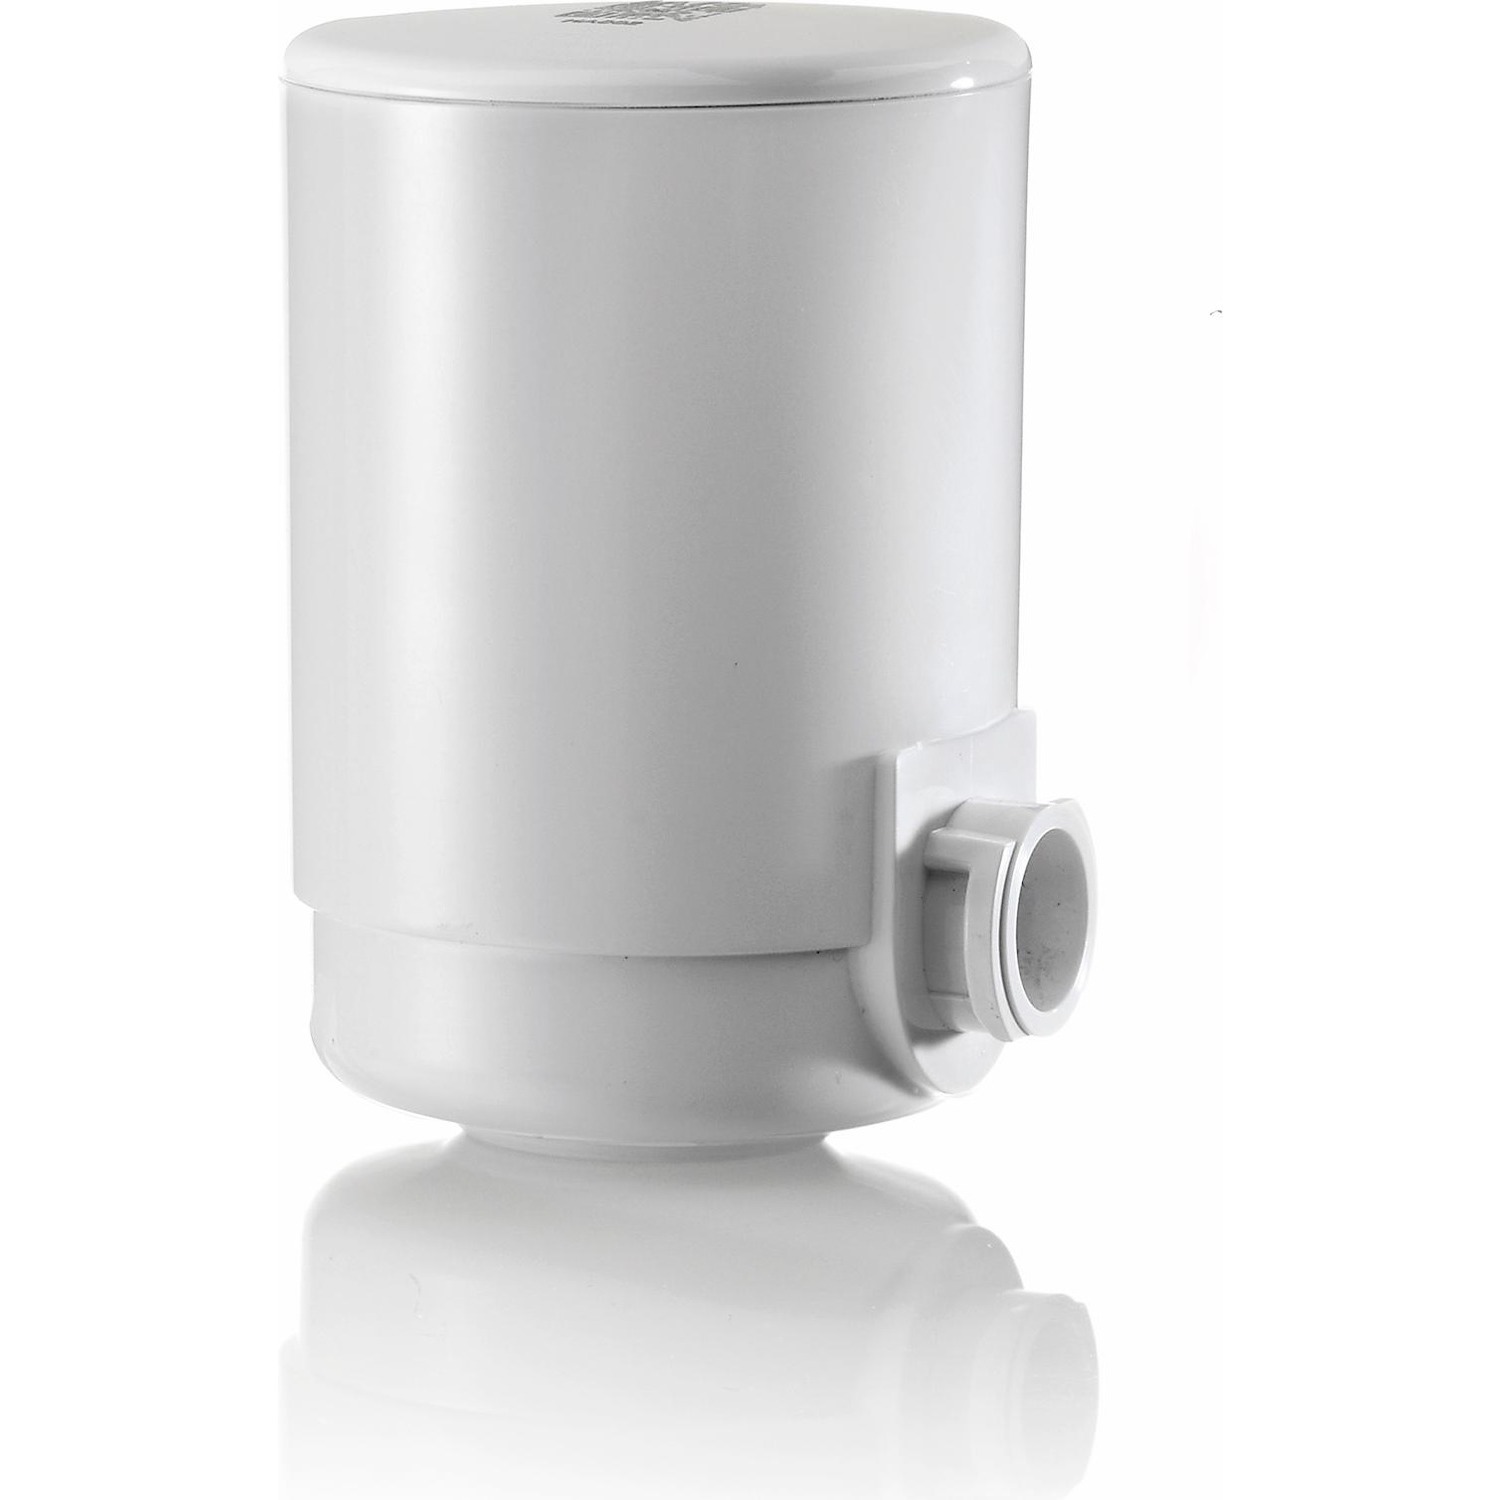 Filtro Laica RK50A01 compatibile per filtro rubinetto Laica